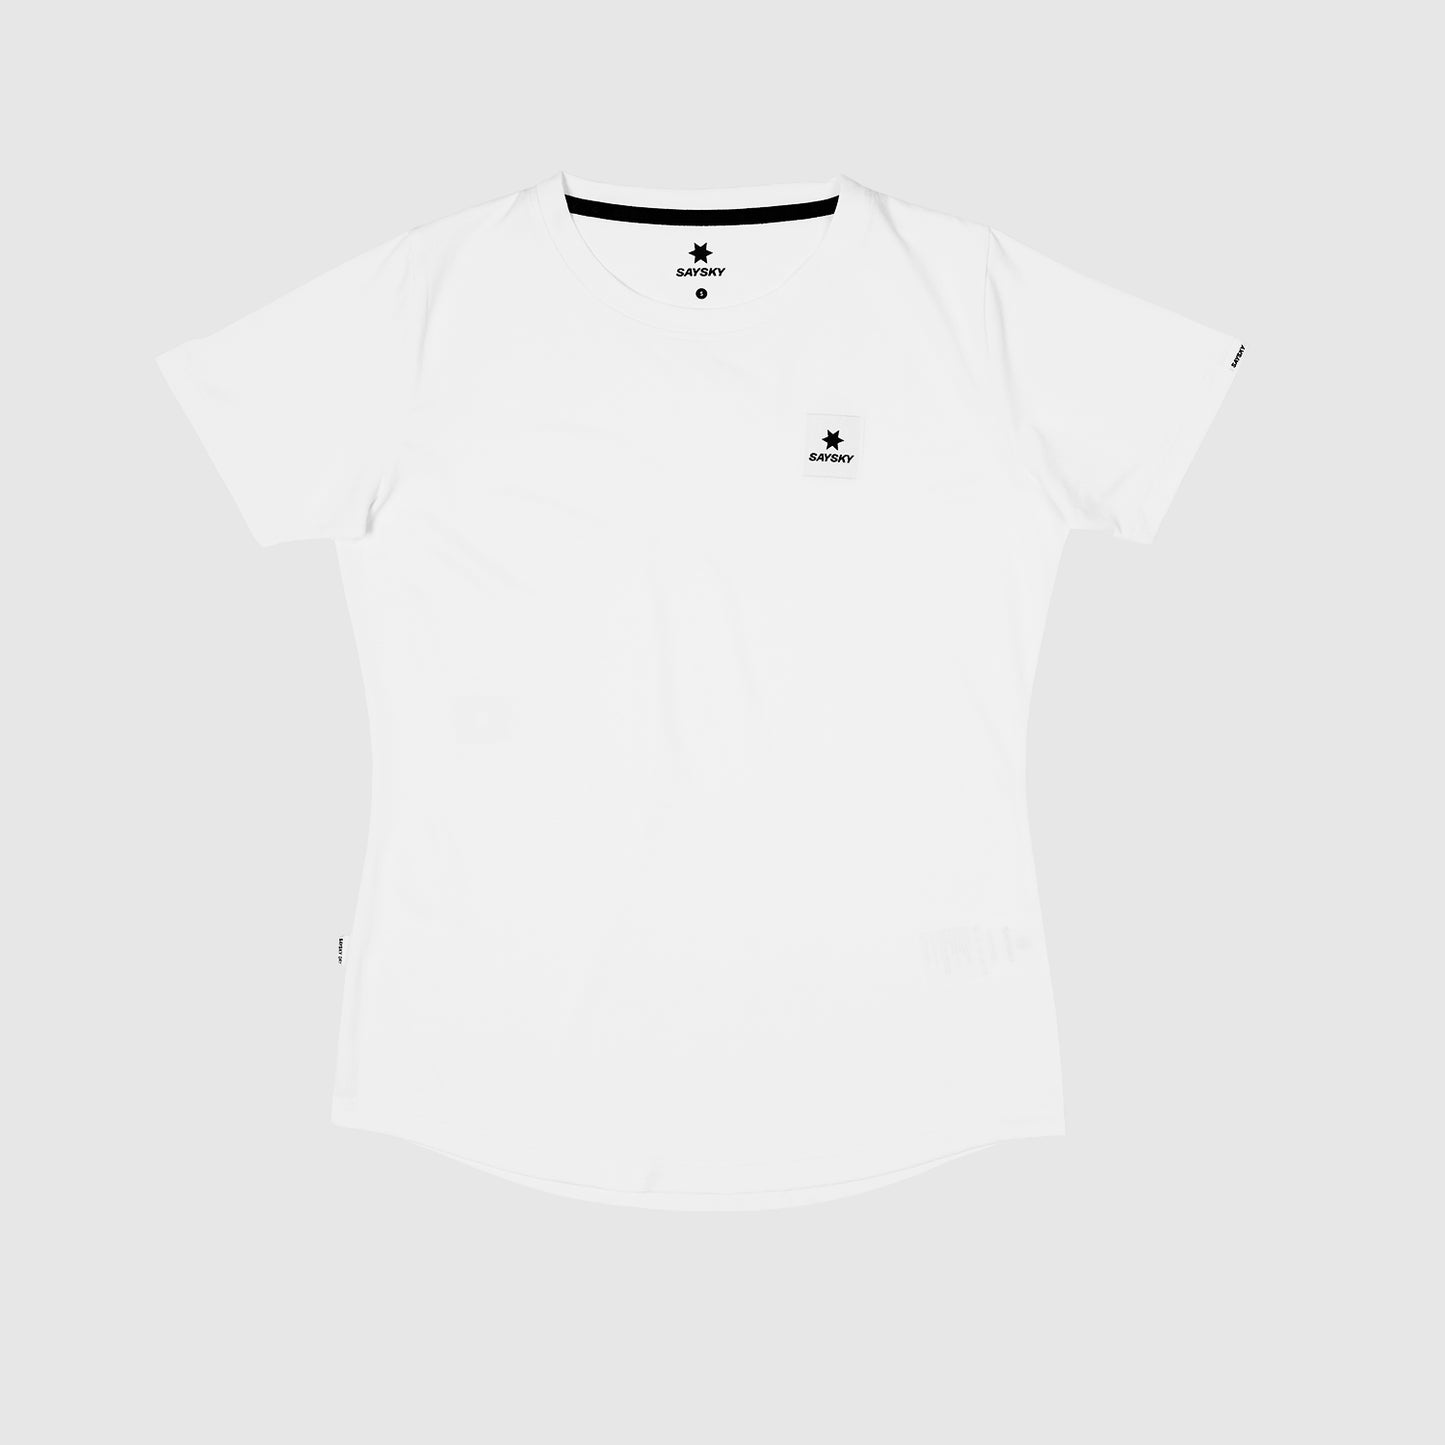 ランニングTシャツ XWRSS30c101 Wmns Clean Combat T-shirt - White [レディーズ]